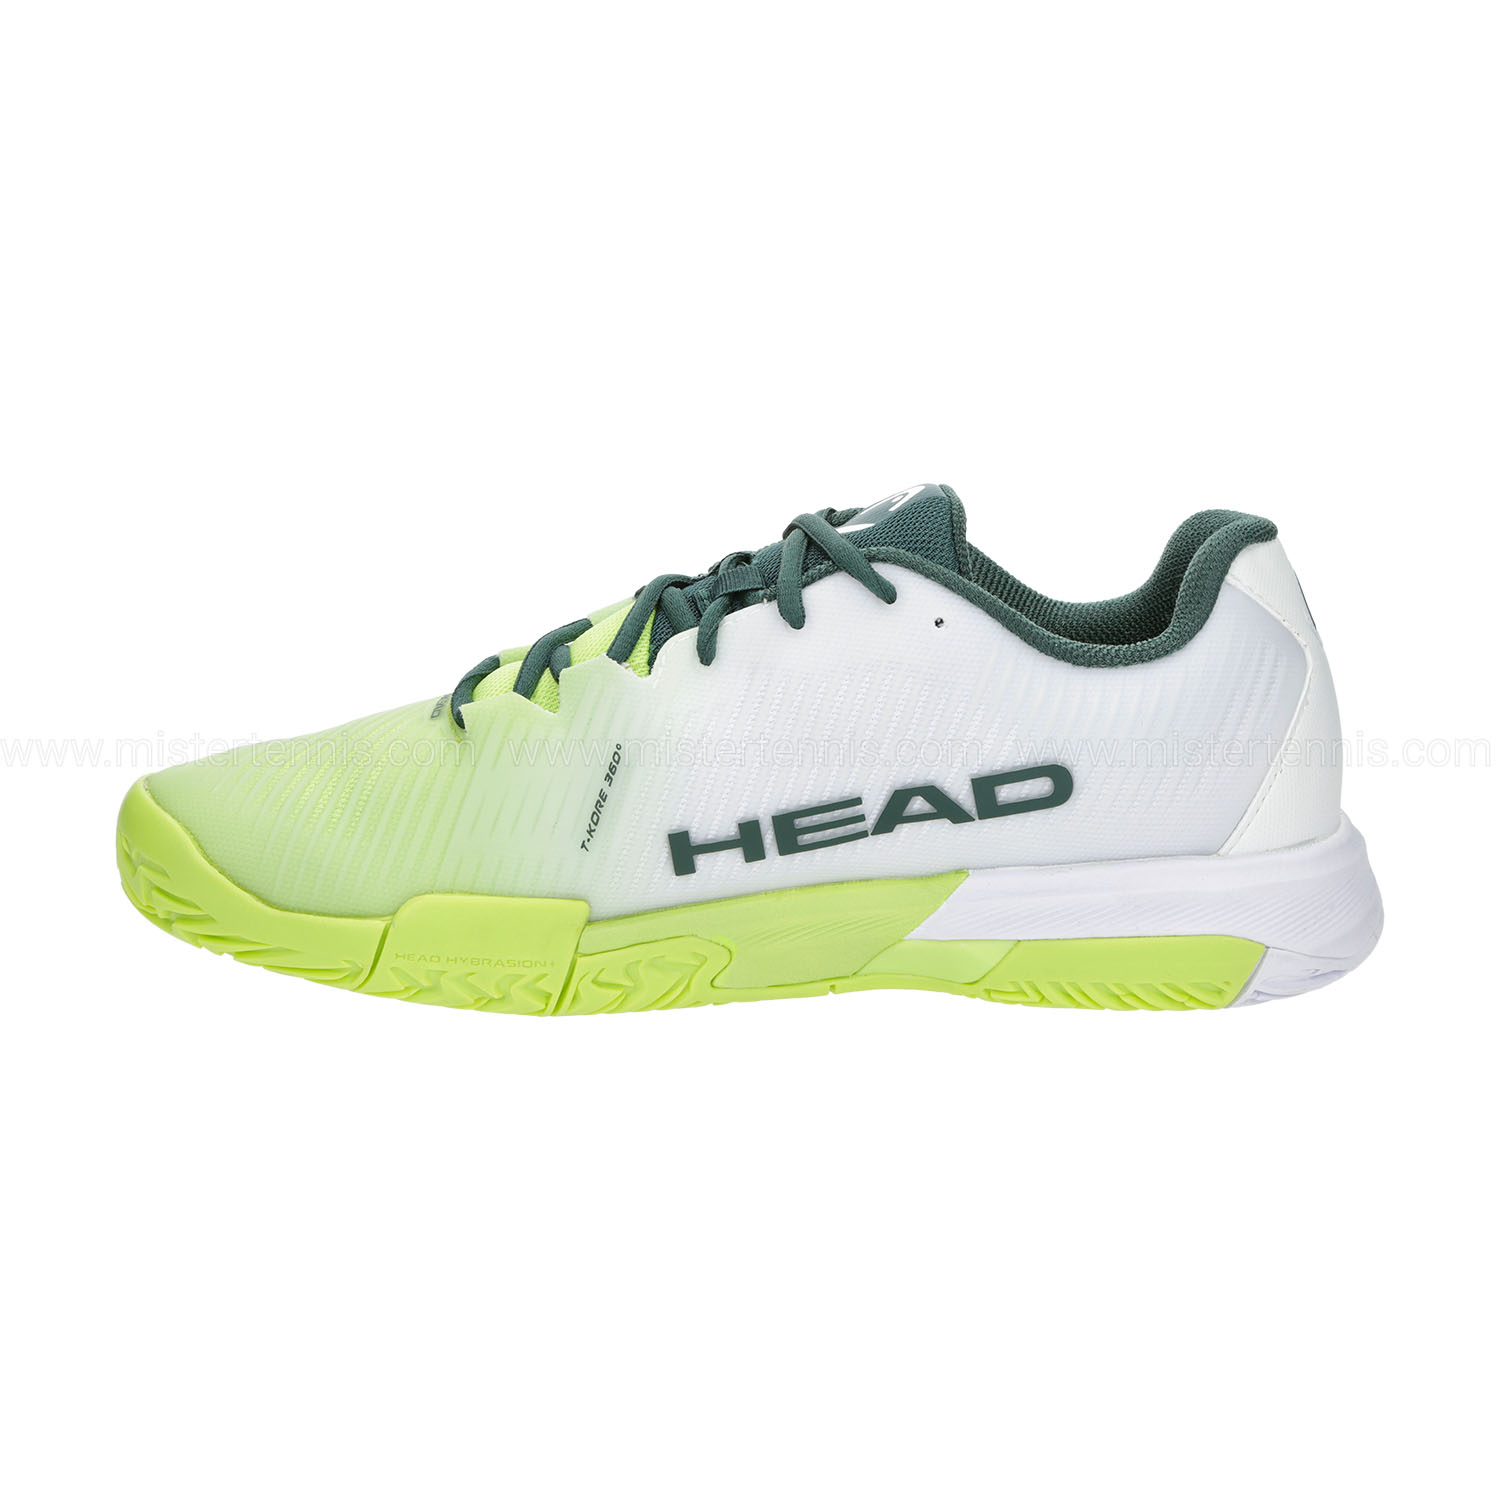 Head Revolt Pro 4.0 - Light Green/White